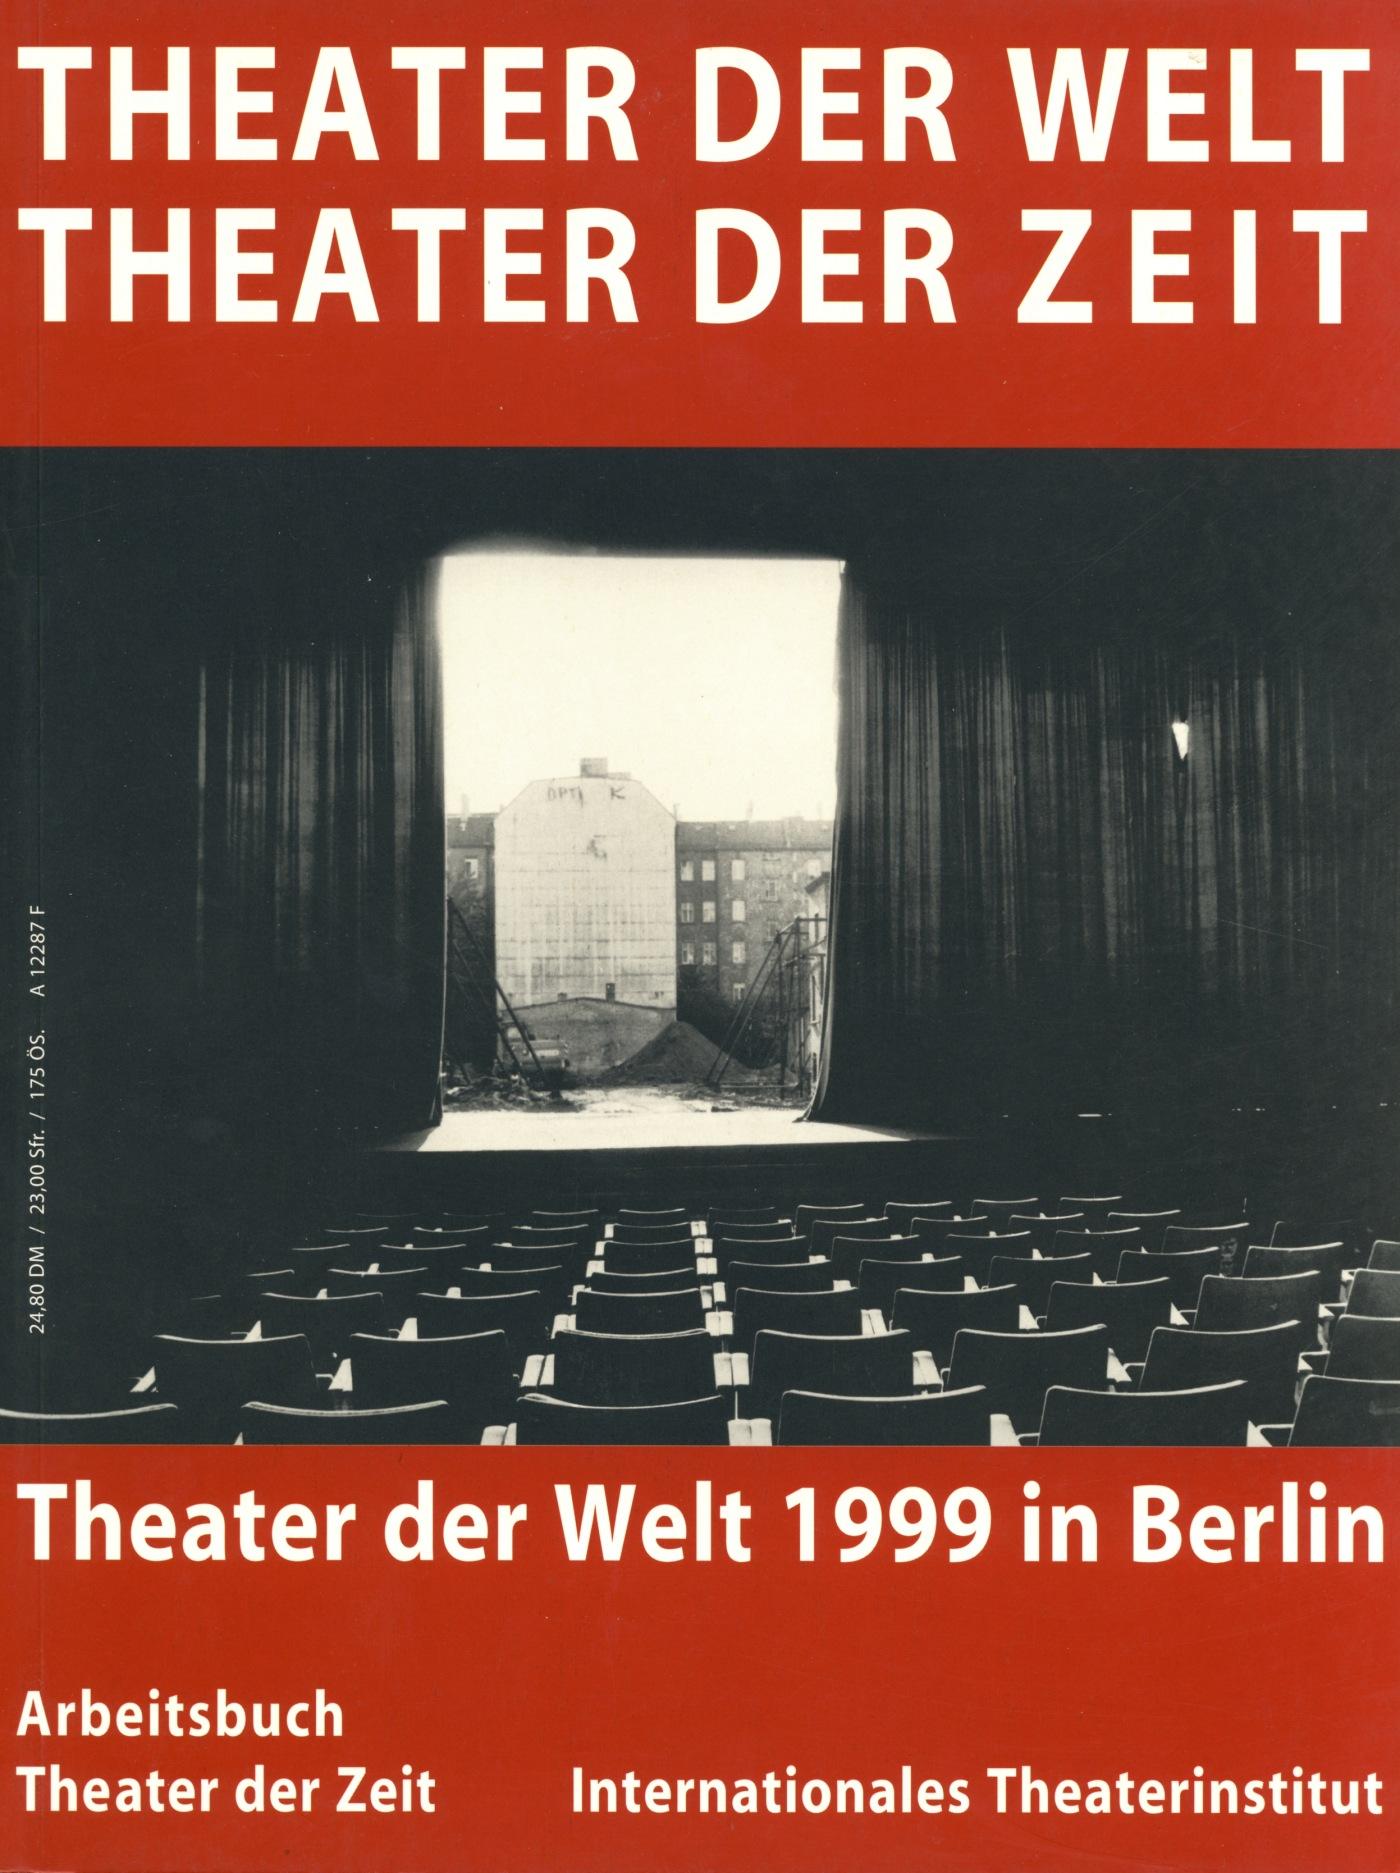 Arbeitsbuch 8 "Theater der Welt"